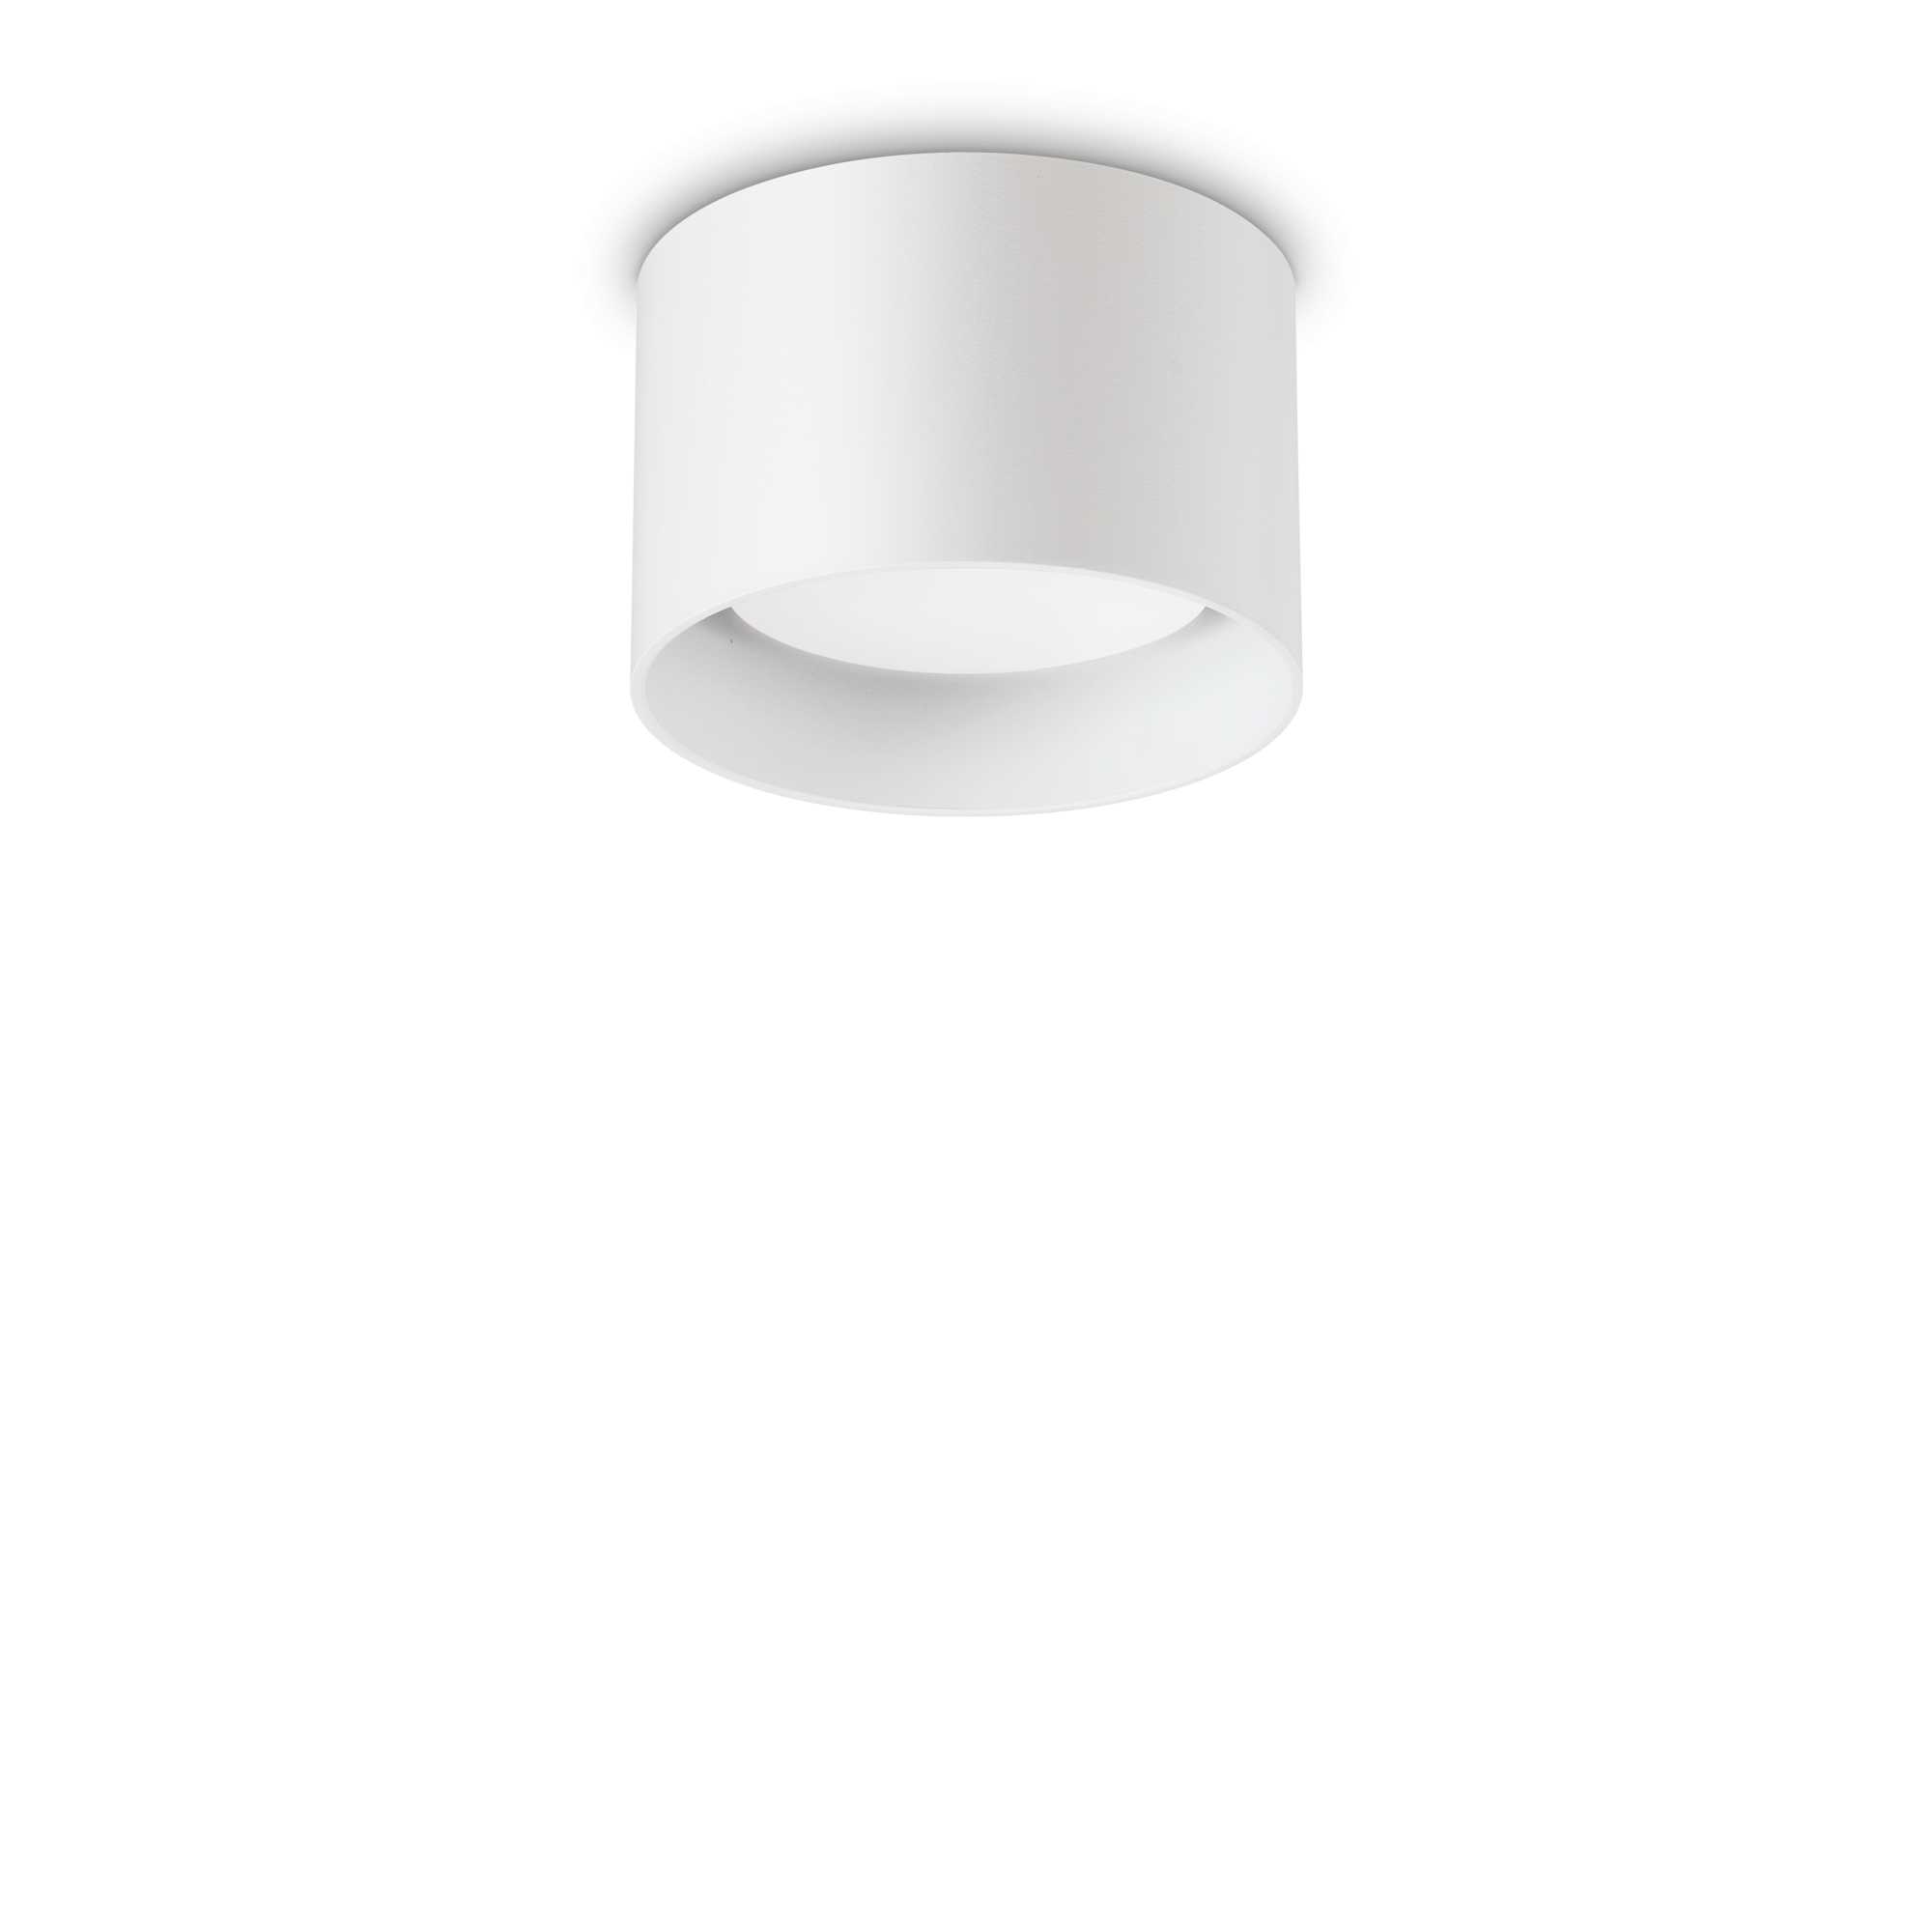 AD hotelska oprema Stropna lampa Spike pl1- okrugla bijela slika proizvoda